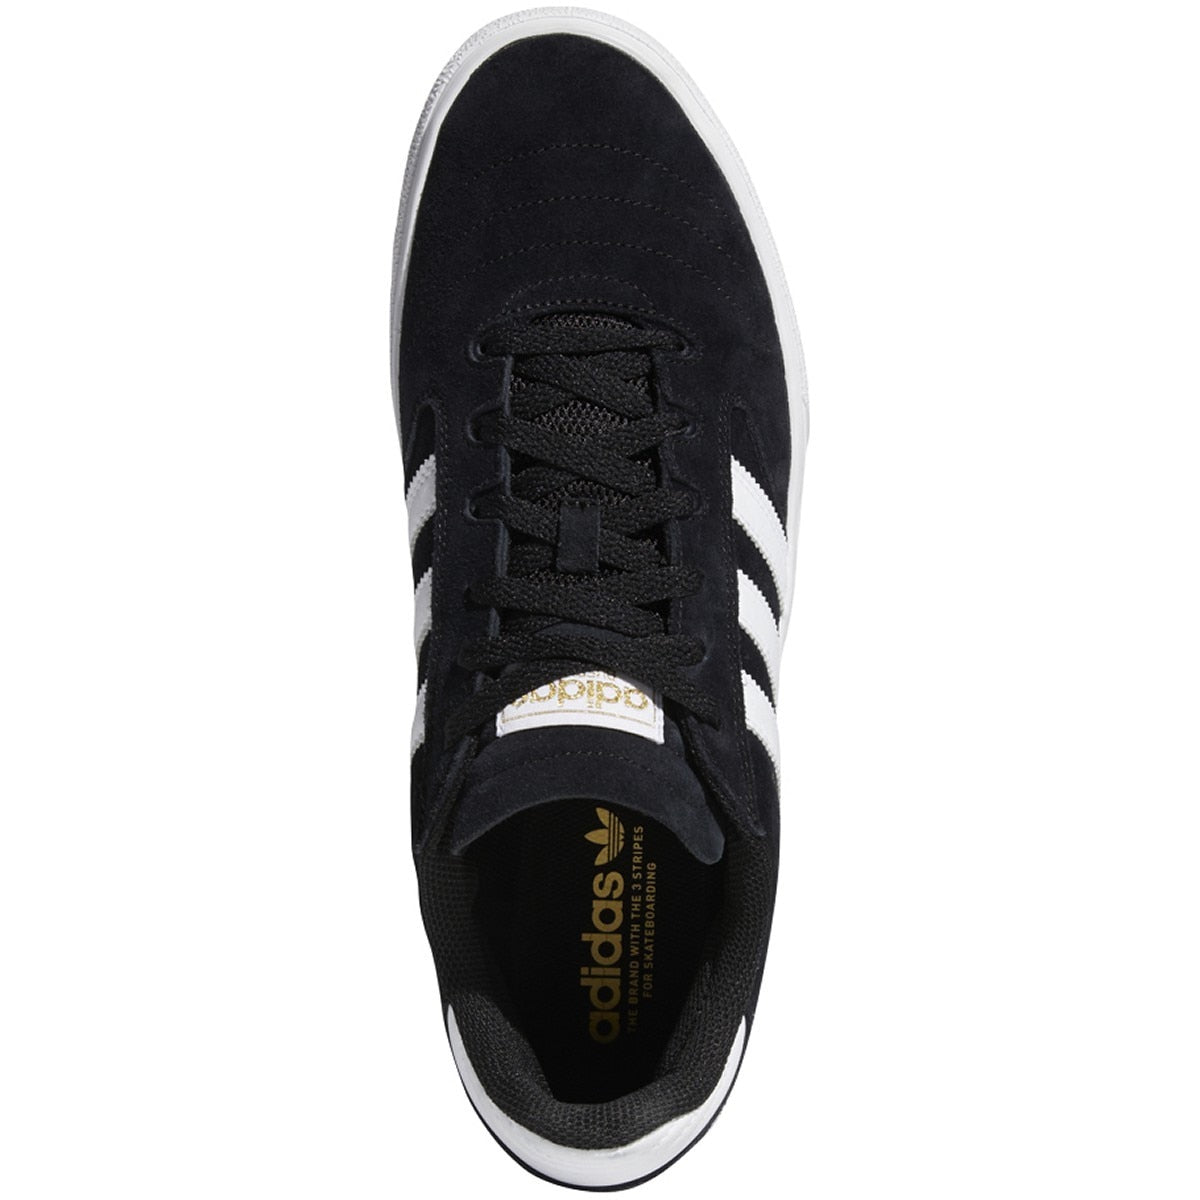 Adidas Busenitz Vulc II Skate Shoe - Black/White/Gum